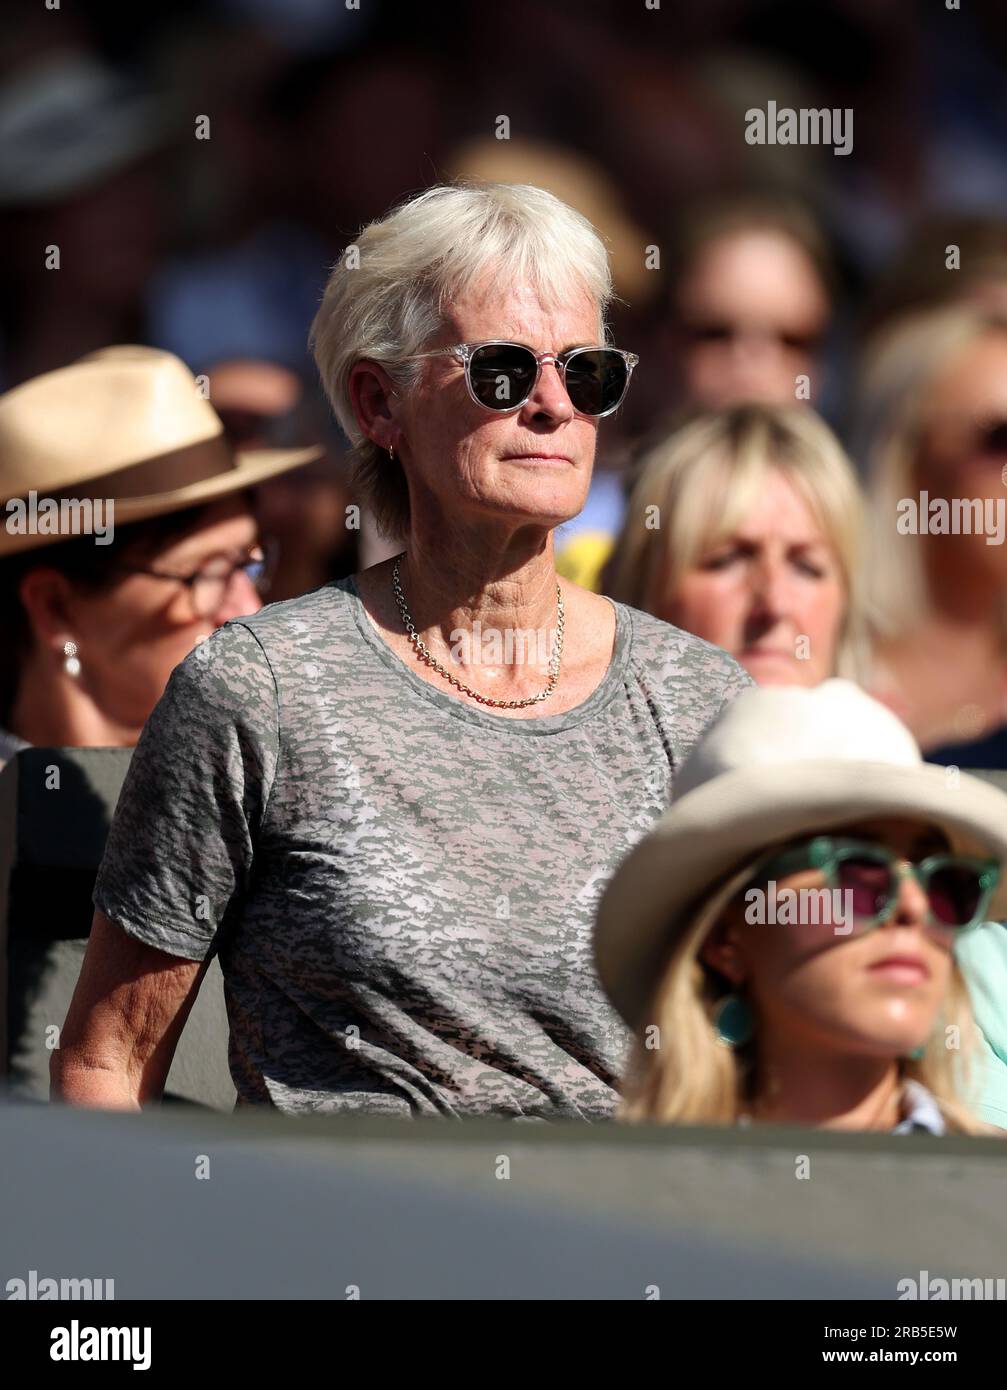 Judy Murray nel quinto giorno dei campionati di Wimbledon 2023 all'All England Lawn Tennis and Croquet Club di Wimbledon. Data immagine: Venerdì 7 luglio 2023. Foto Stock